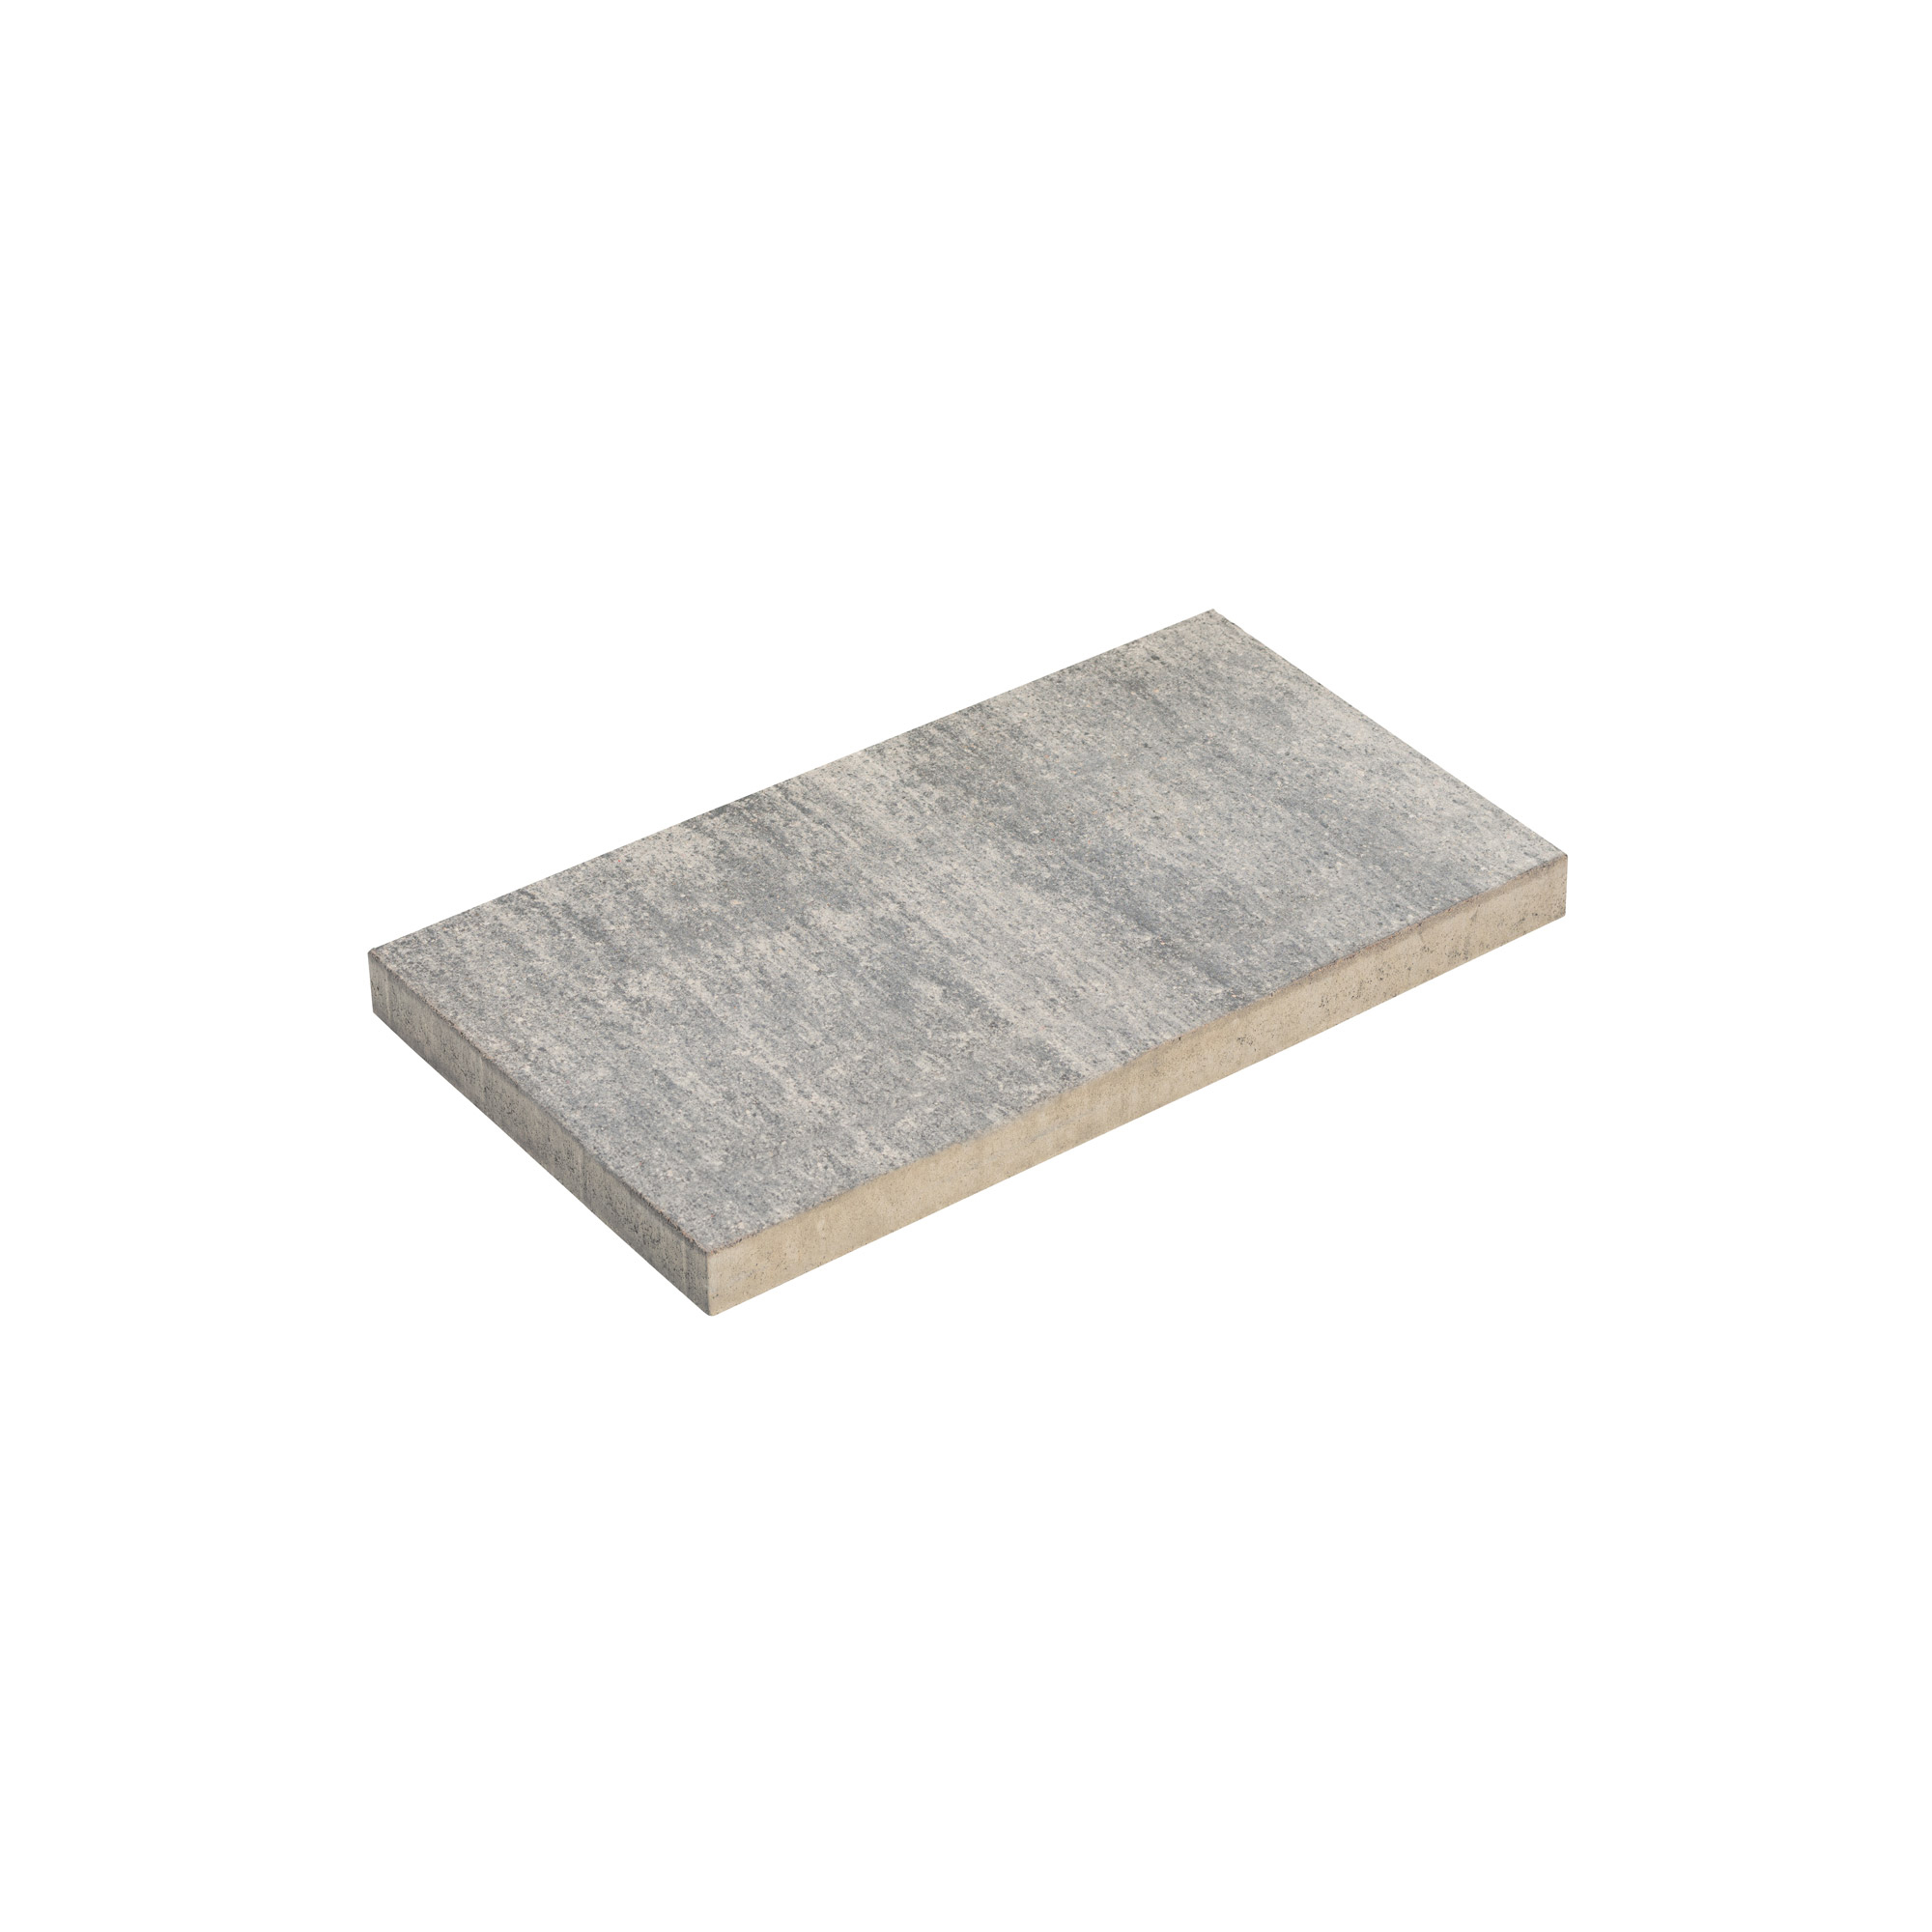 Terrassenplatte 'T-Court Solid' Beton schwarz/weiß 60 x 30 x 4 cm + product picture